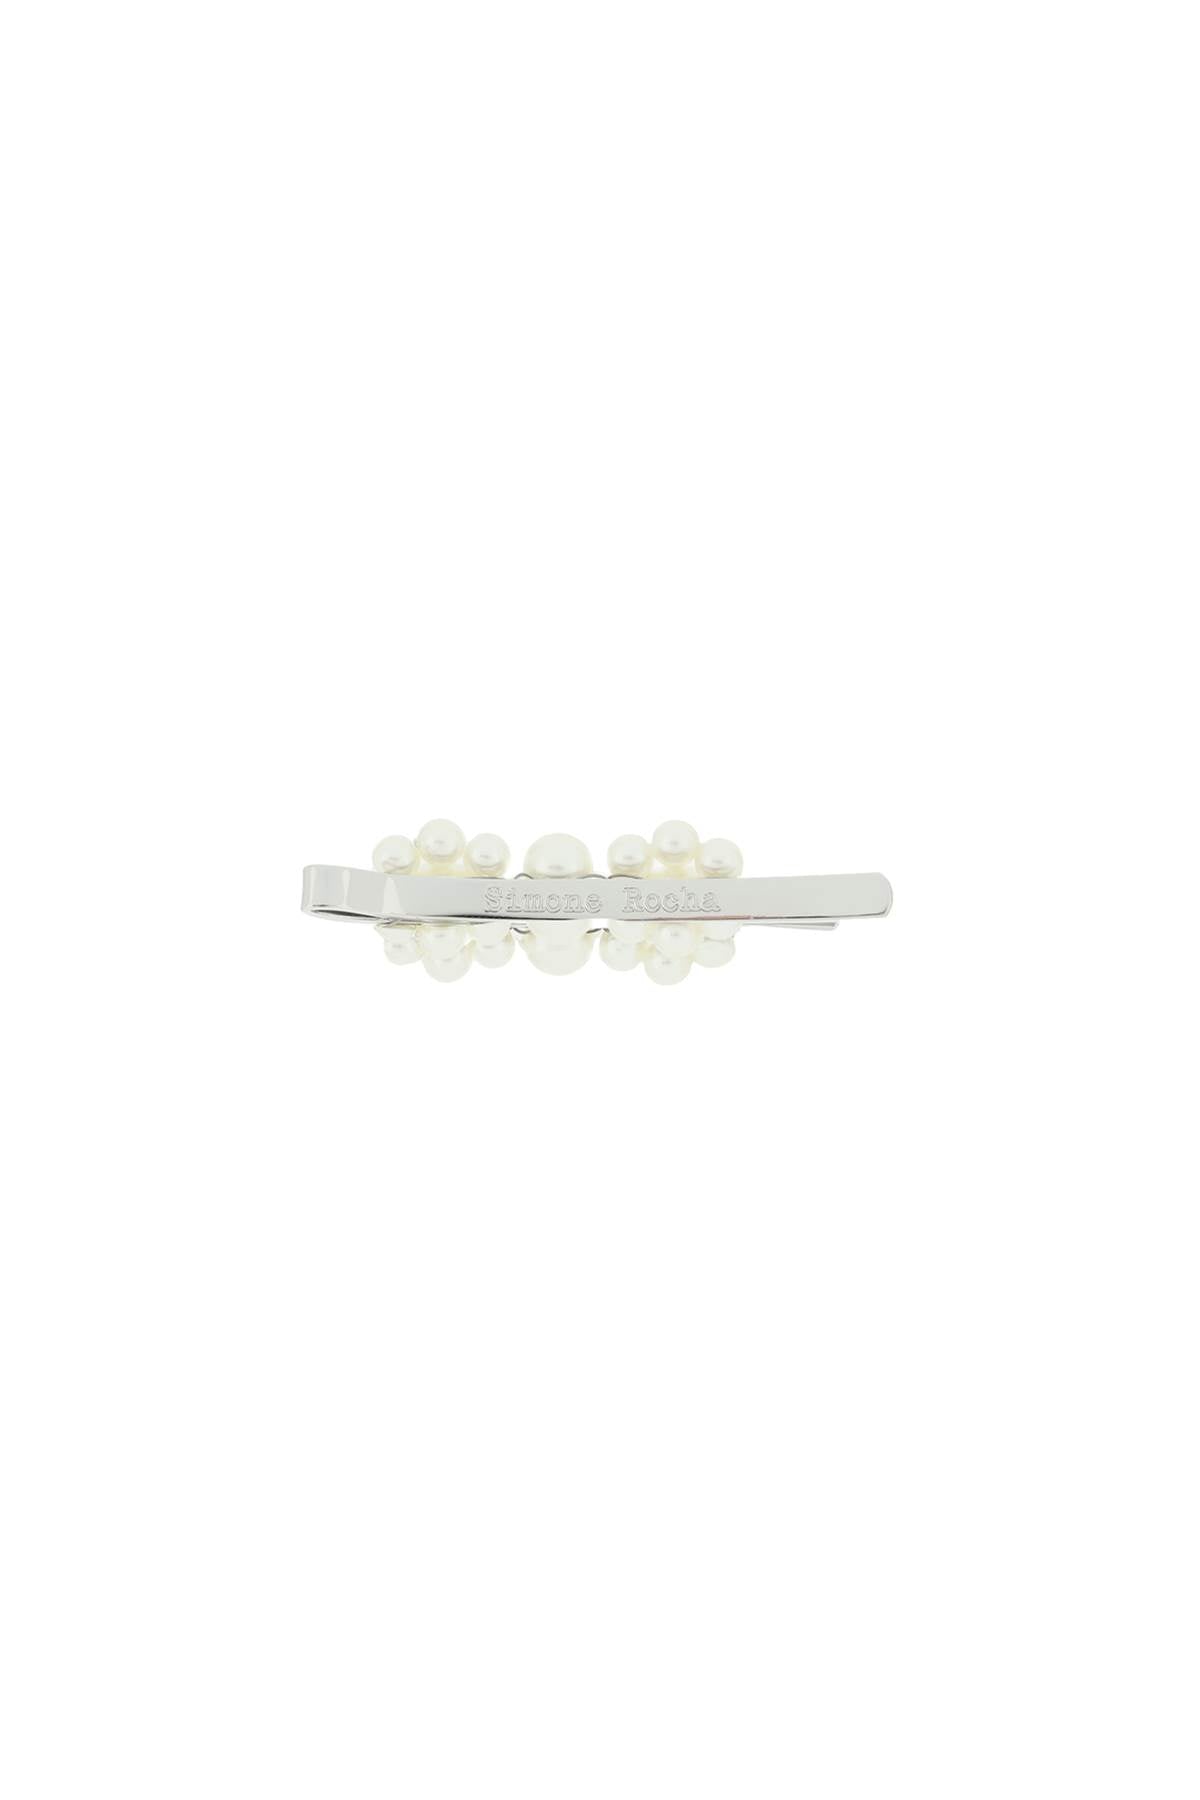 Simone Rocha Mini Flower Hair Clip With Pearls   White